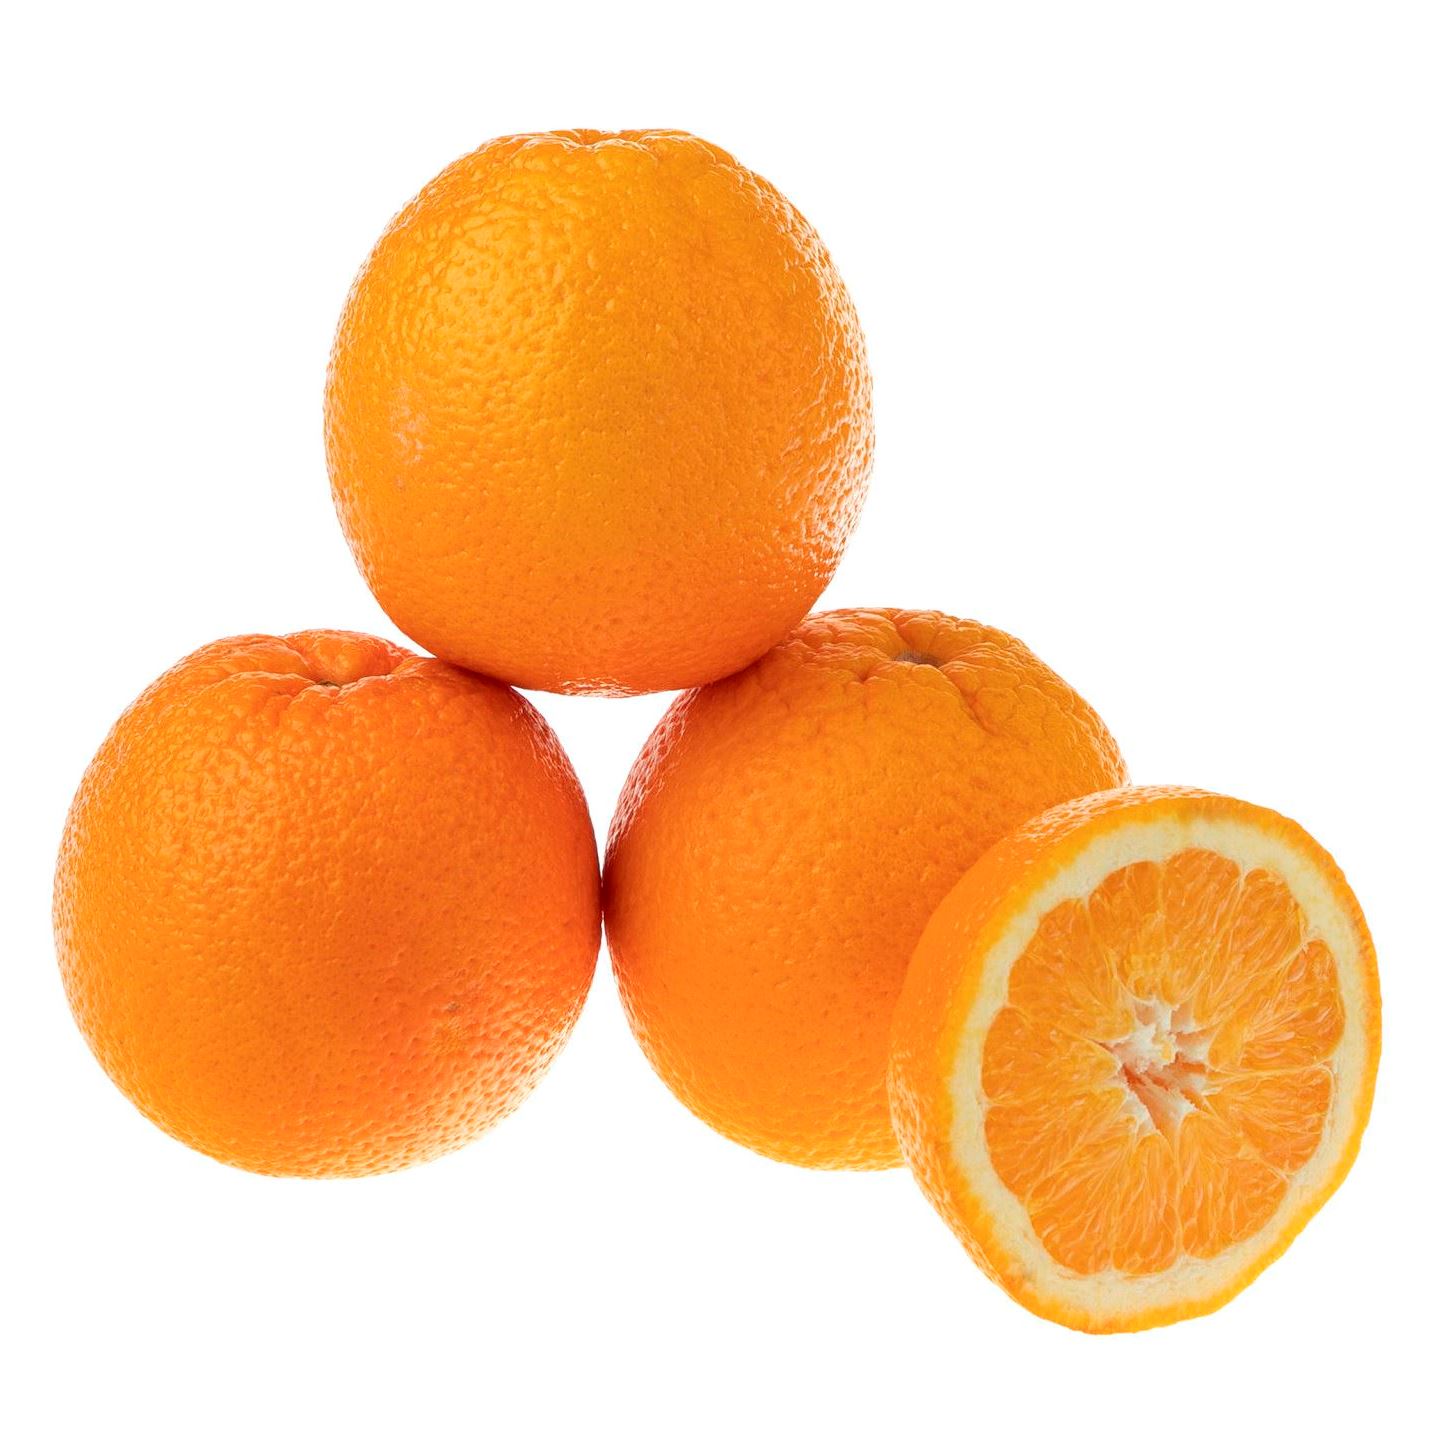 پرتقال تامسون درشت